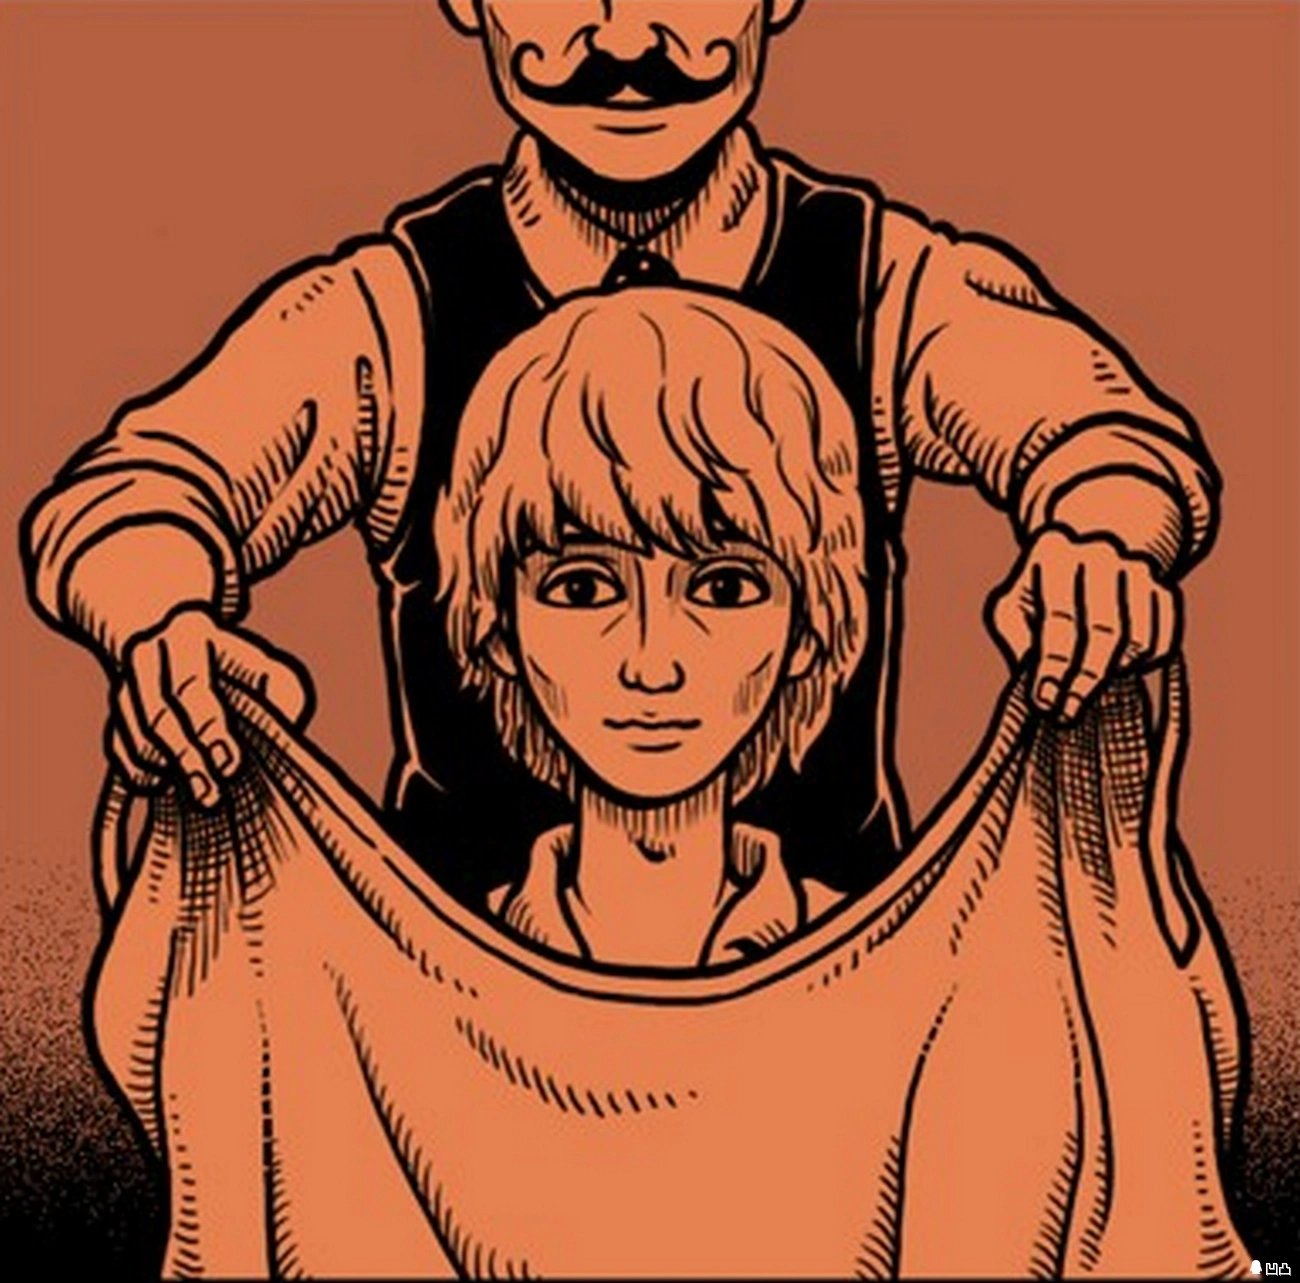 无声漫画:男子来到一家理发店,发现店里气氛非常怪异